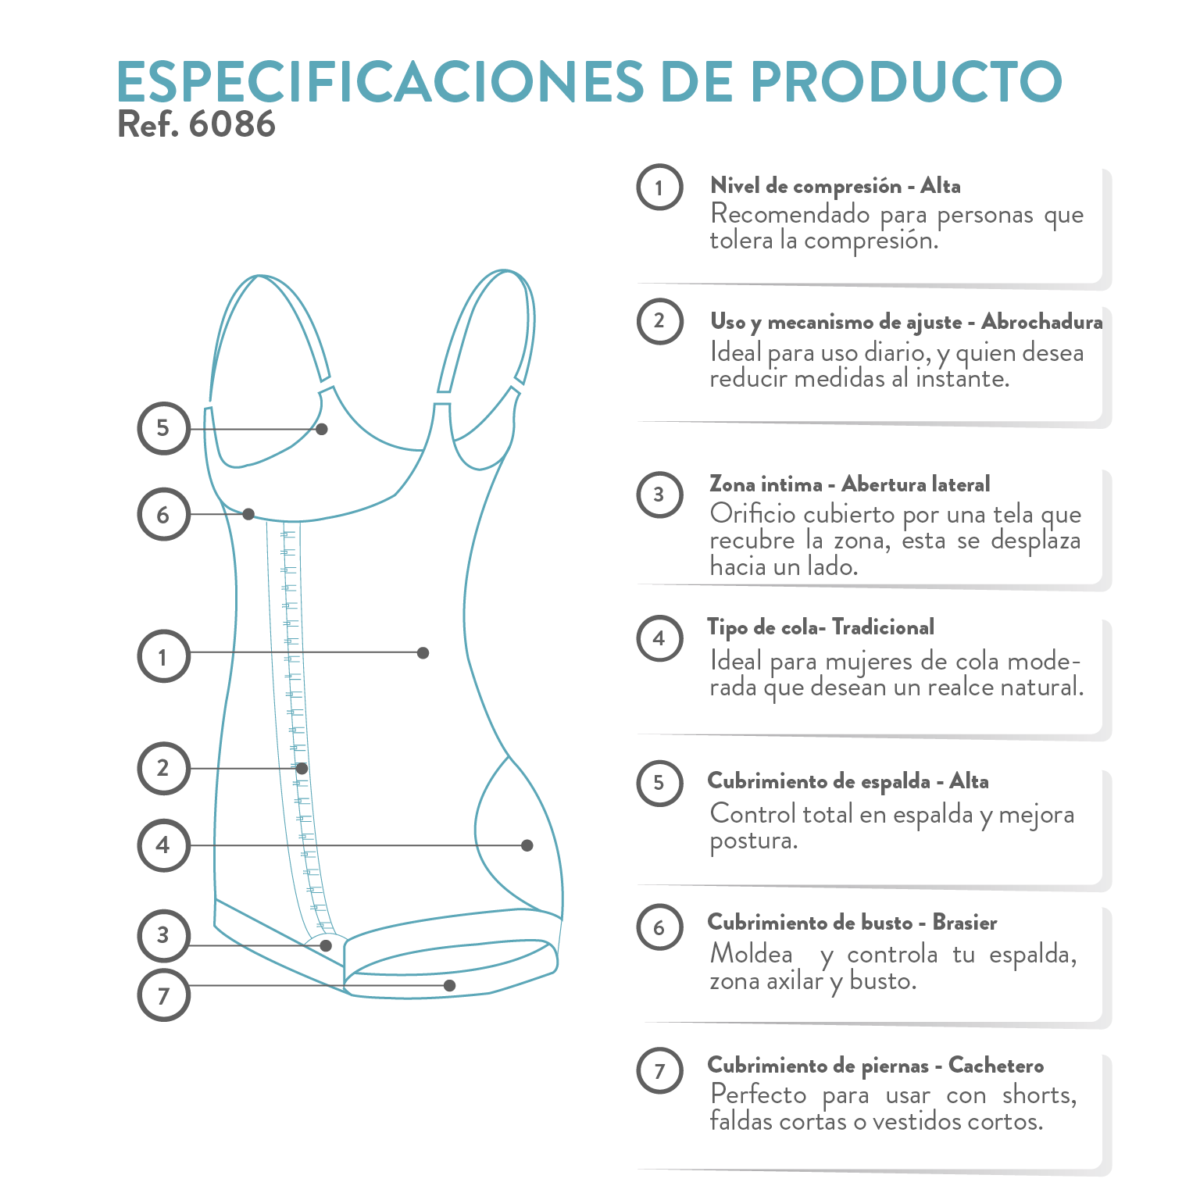 La faja colombiana moldeadora postquirúrgica es ideal también para uso diario o posparto ya que estiliza la figura al instante.